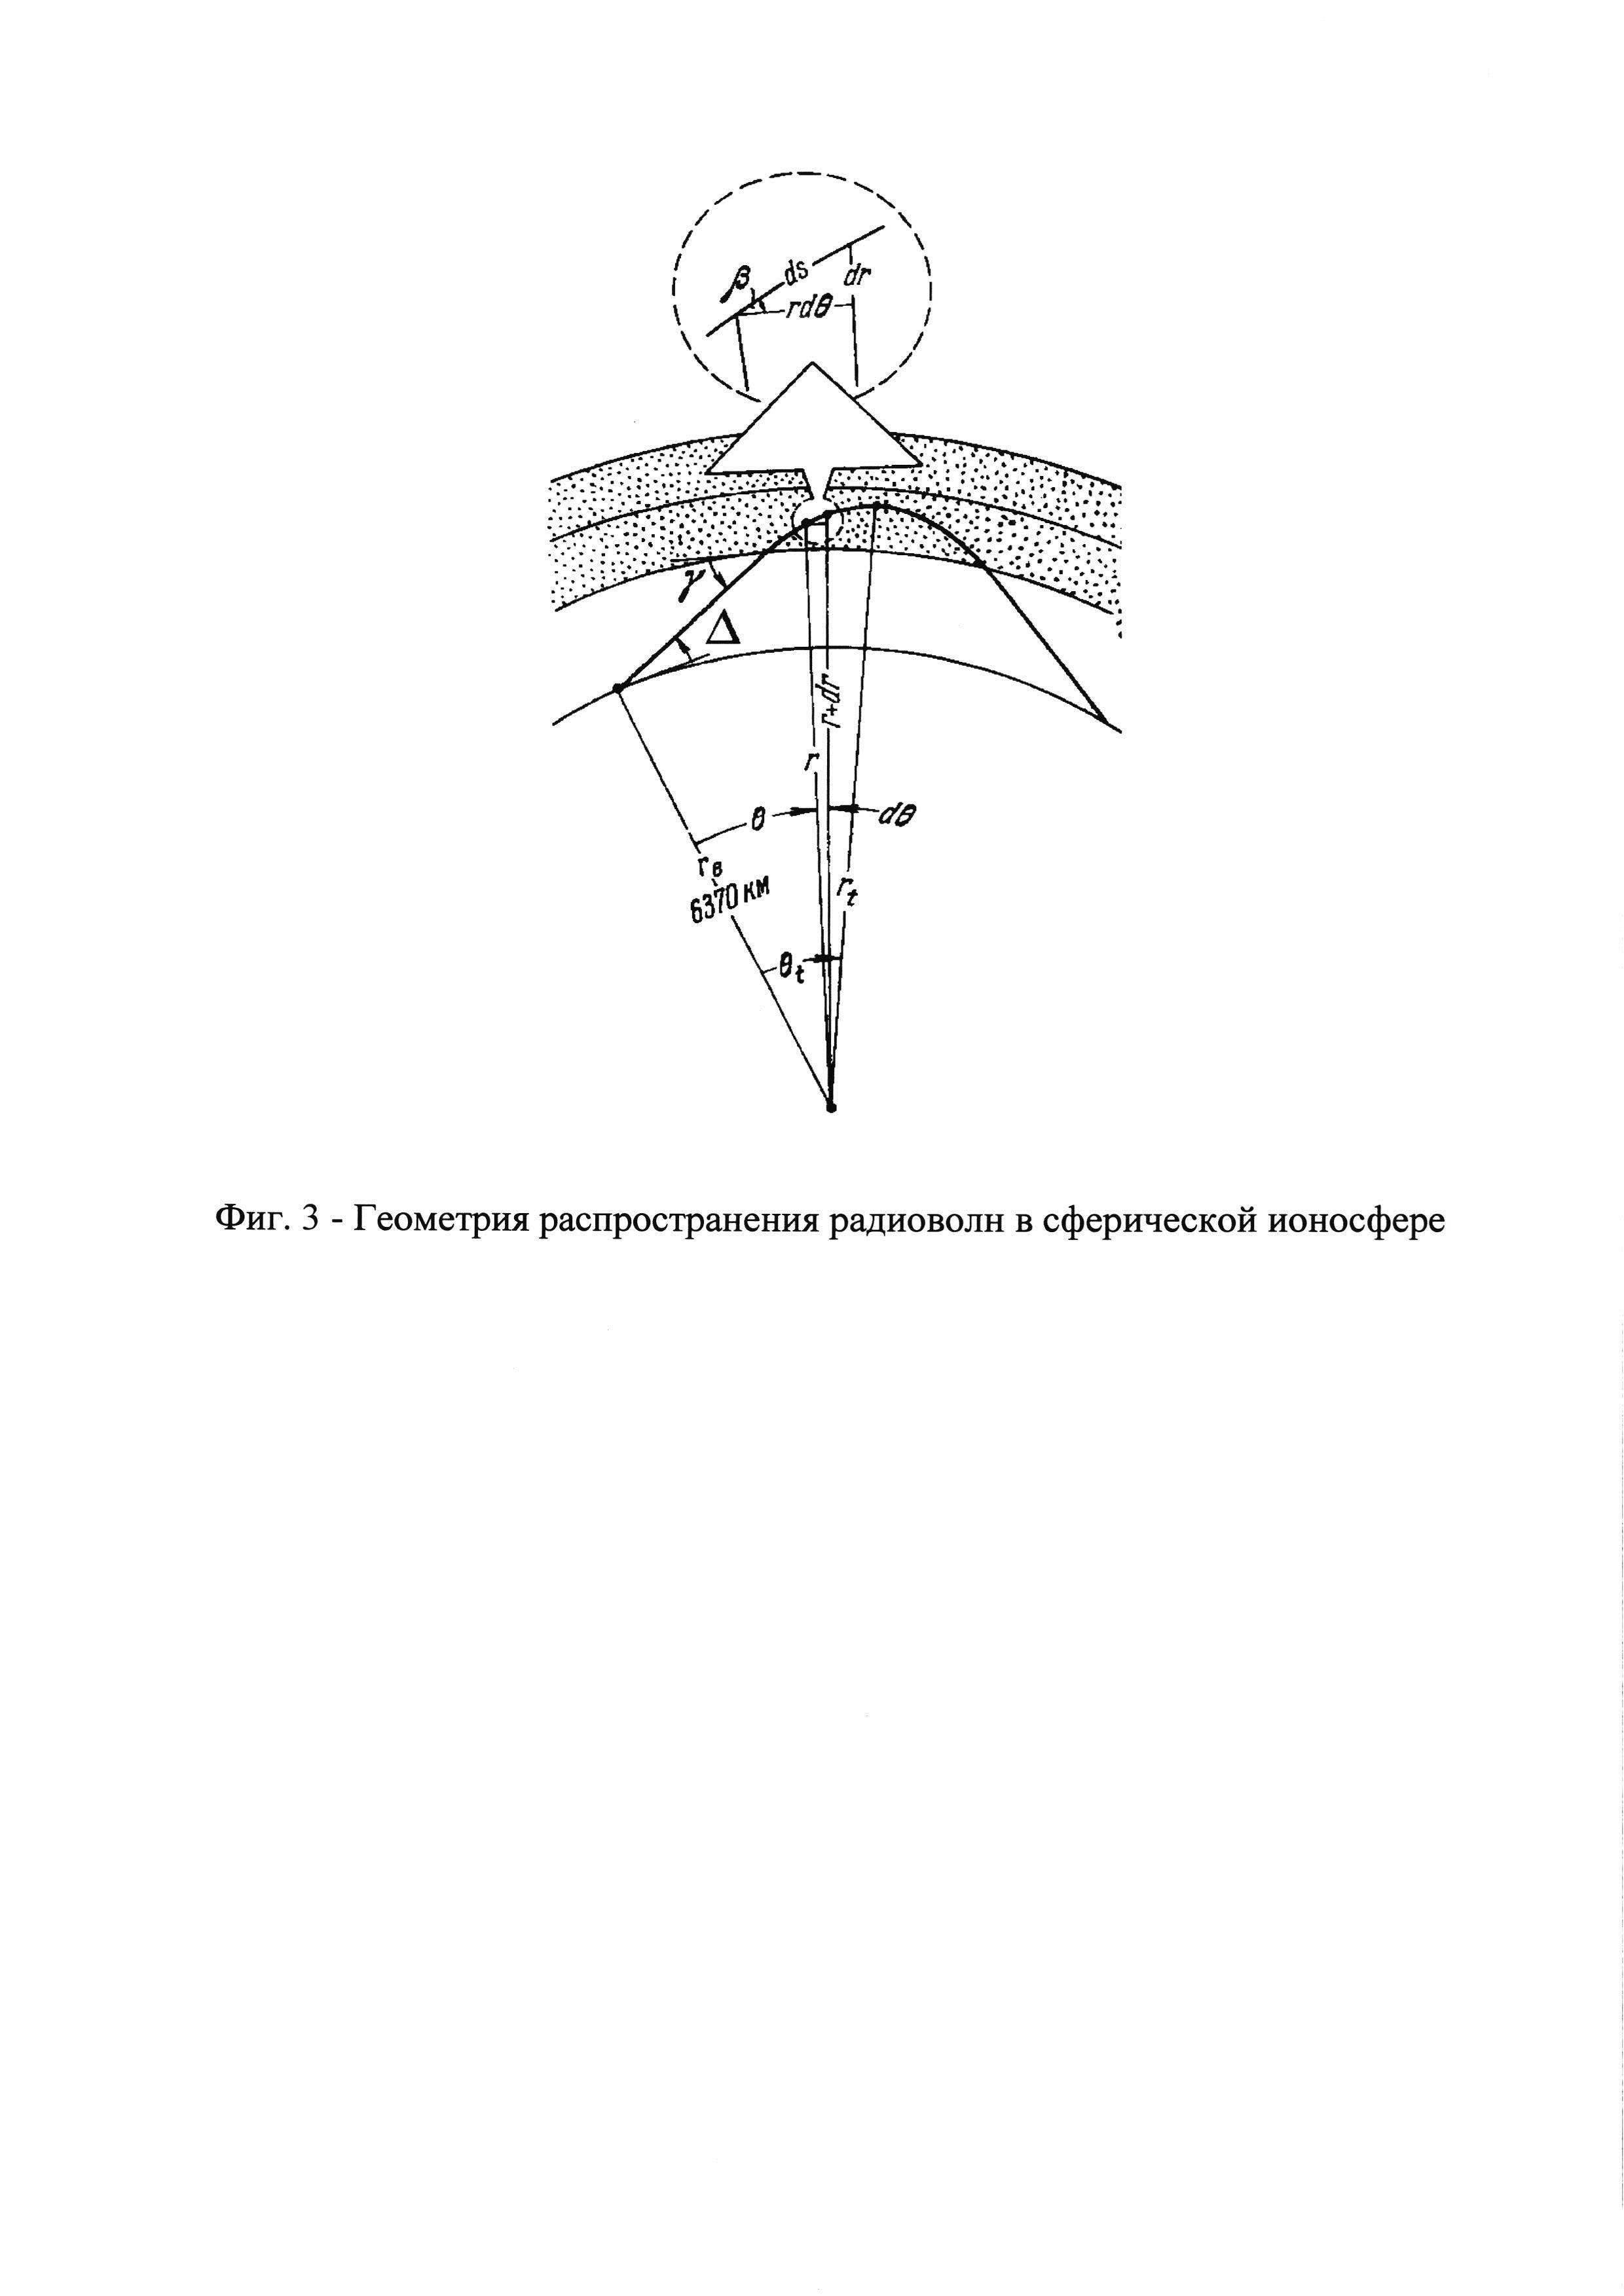 Способ однопозиционного определения координат источников радиоизлучений коротковолнового диапазона радиоволн при ионосферном распространении